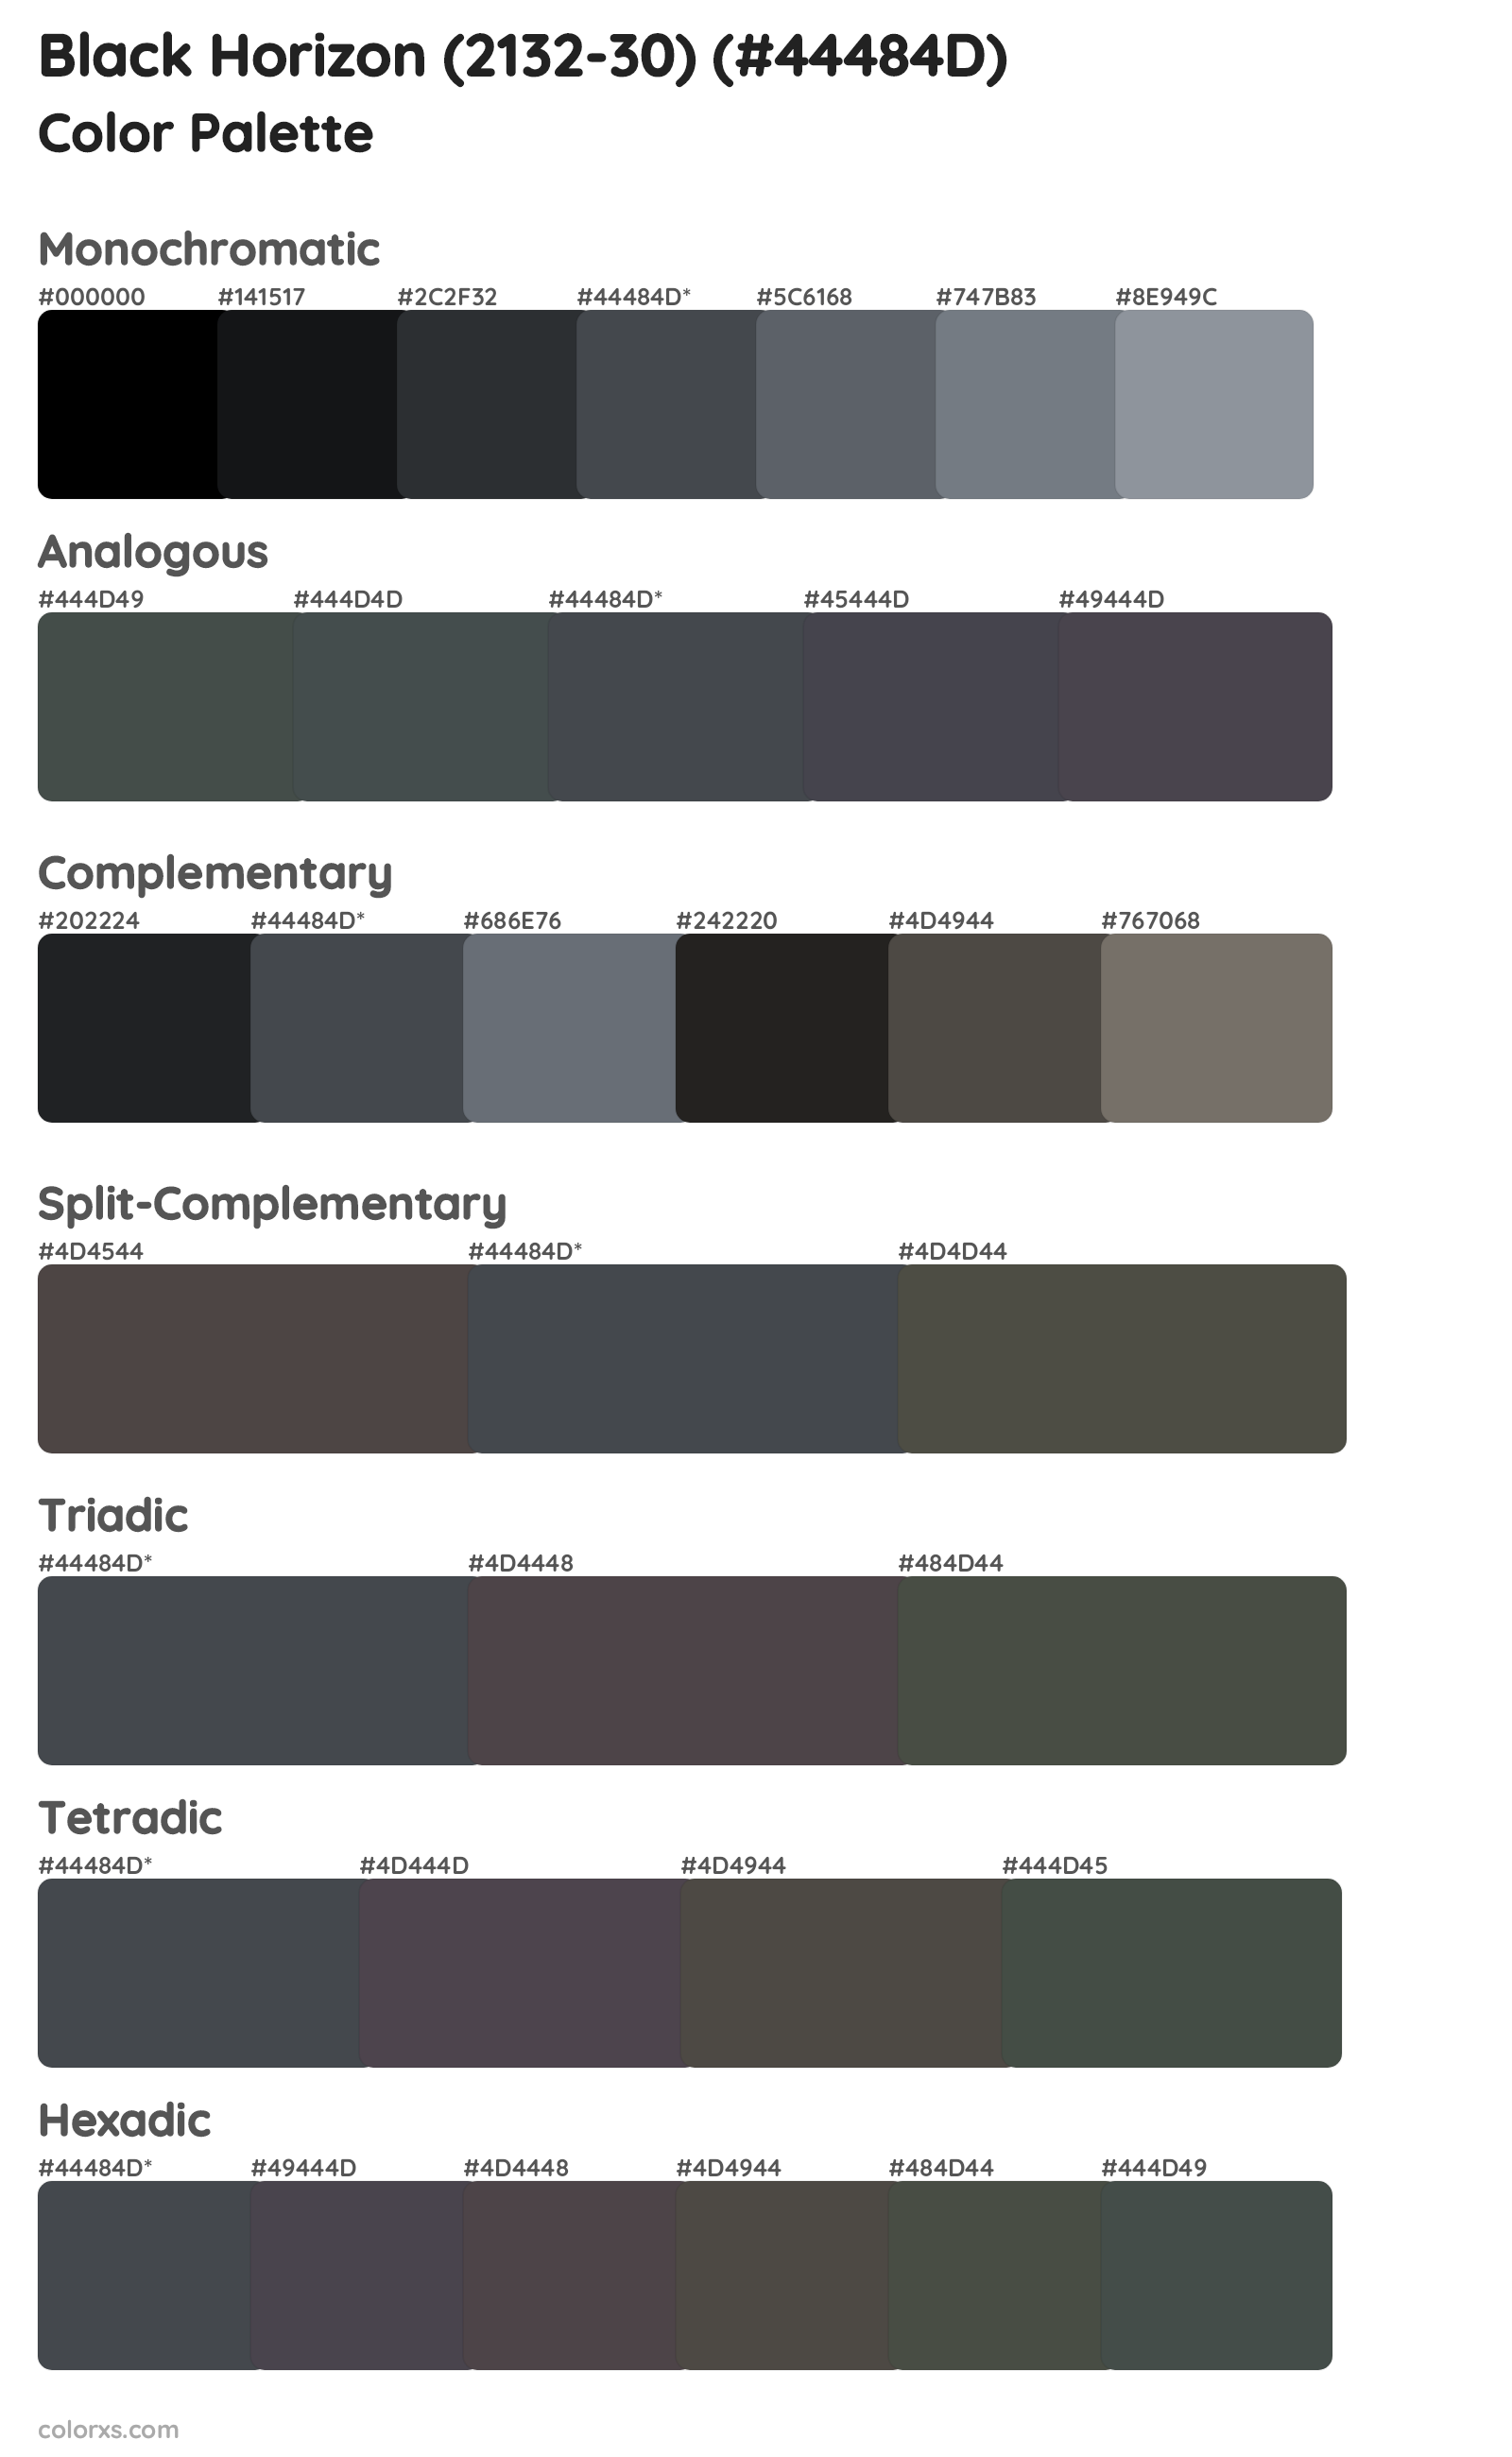 Black Horizon (2132-30) Color Scheme Palettes